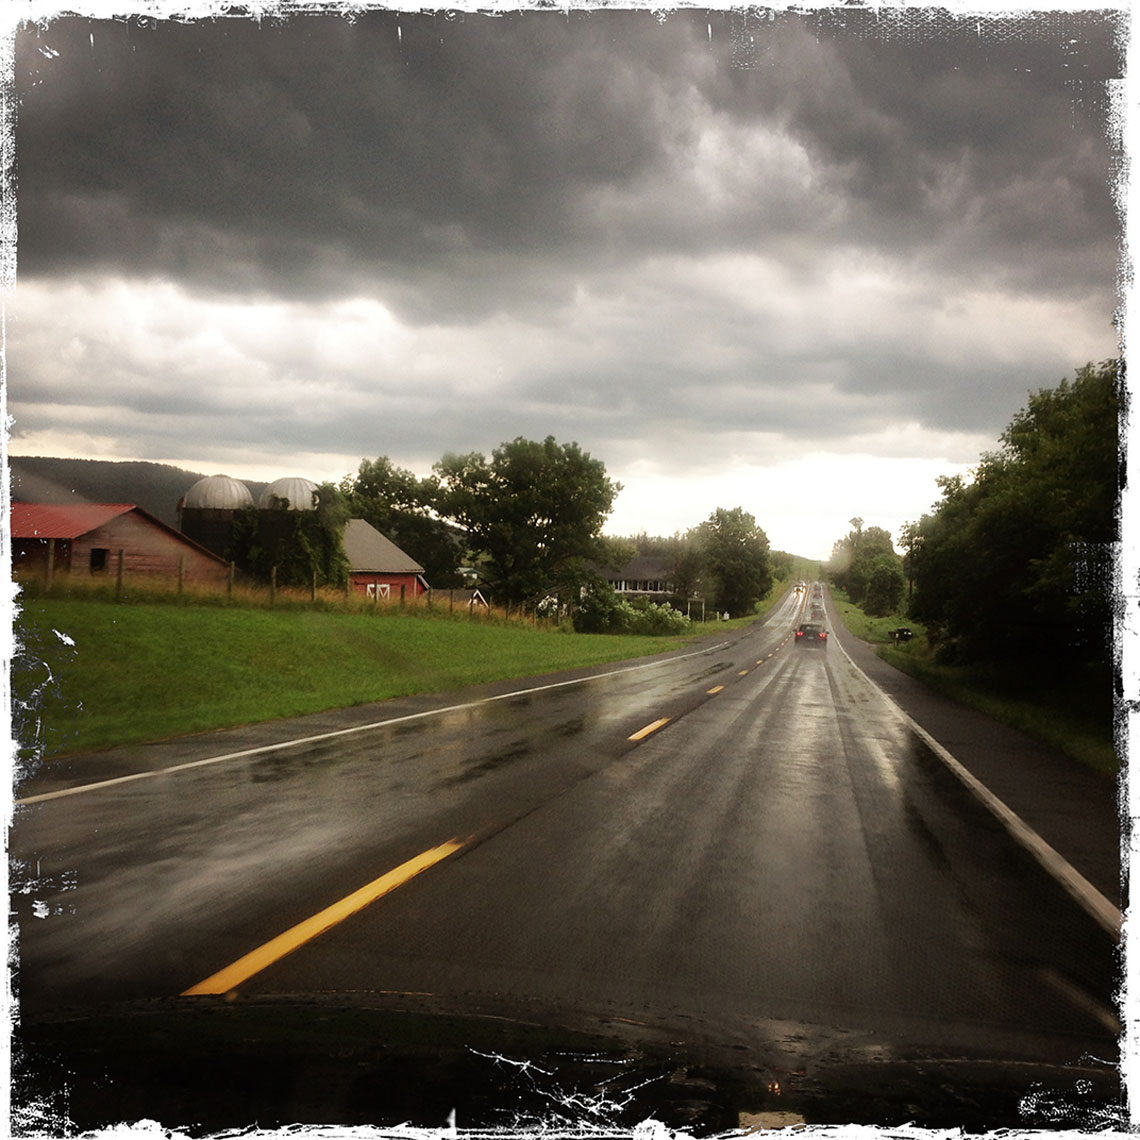 Rain on a Rural Road